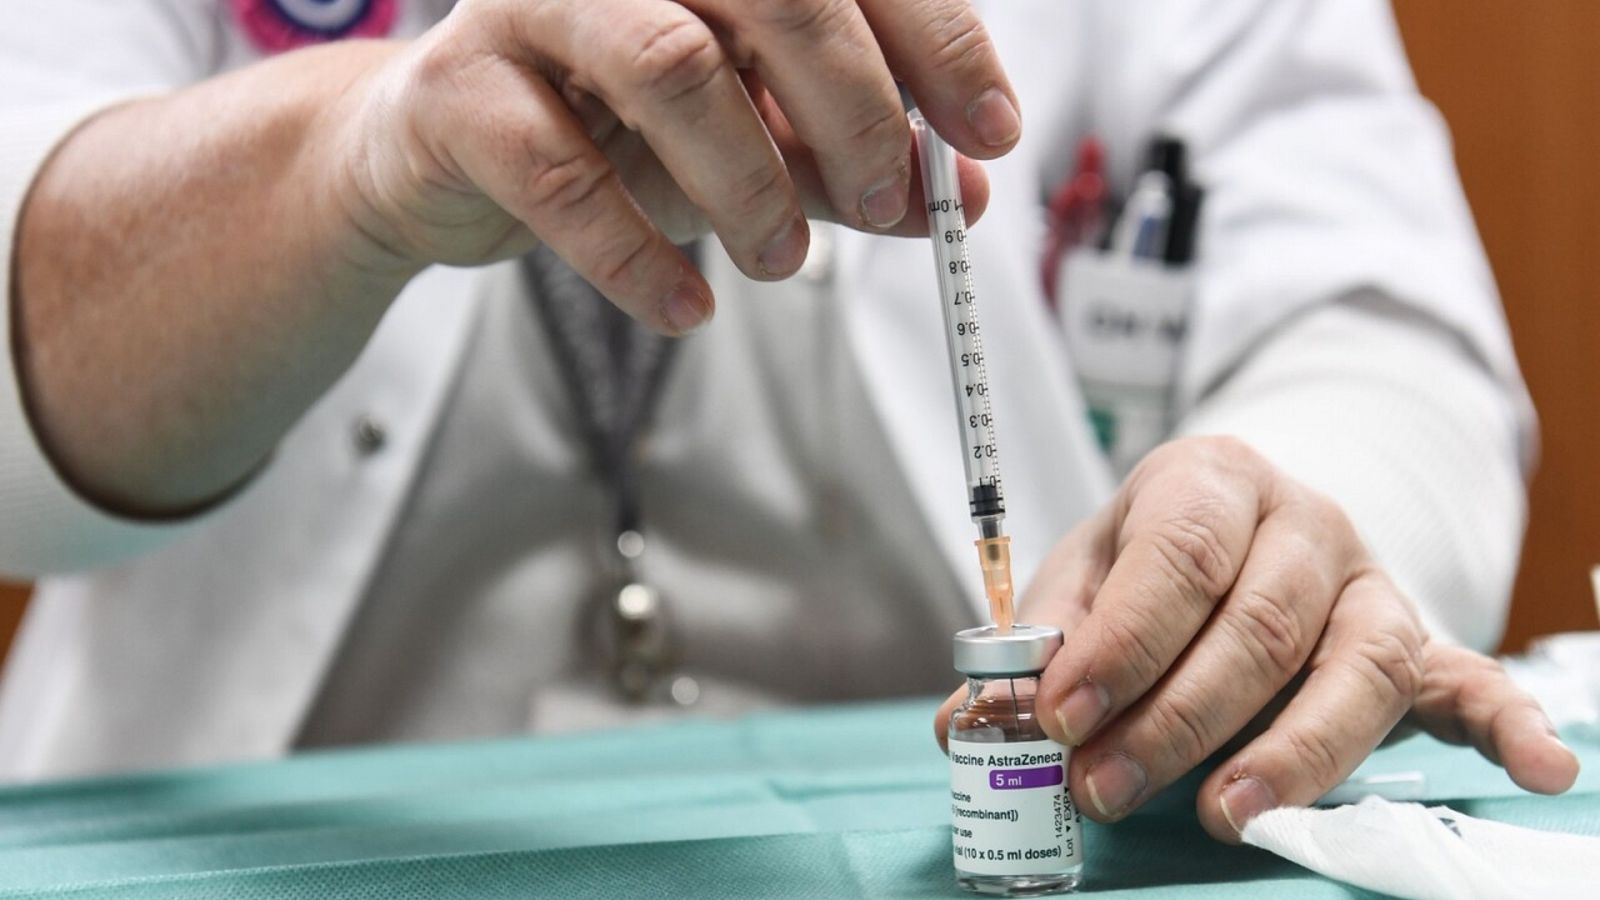 Una sanitaria prepara vacunas de AstraZeneca contra el coronavirus en un hospital a las afueras de París. Foto: ALAIN JOCARD / AFP.